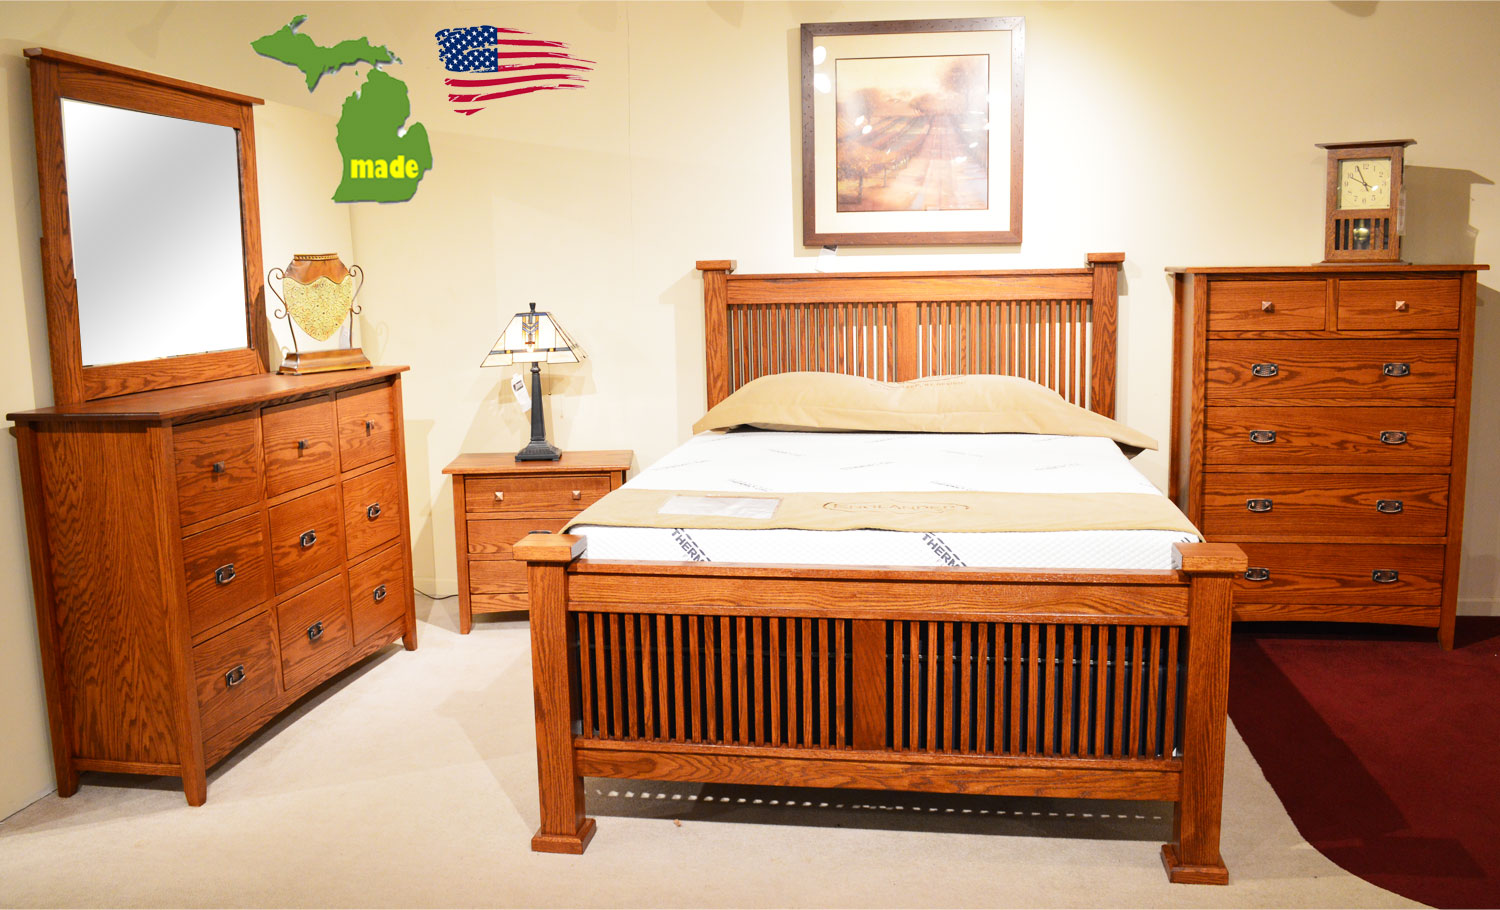 used mission bedroom furniture